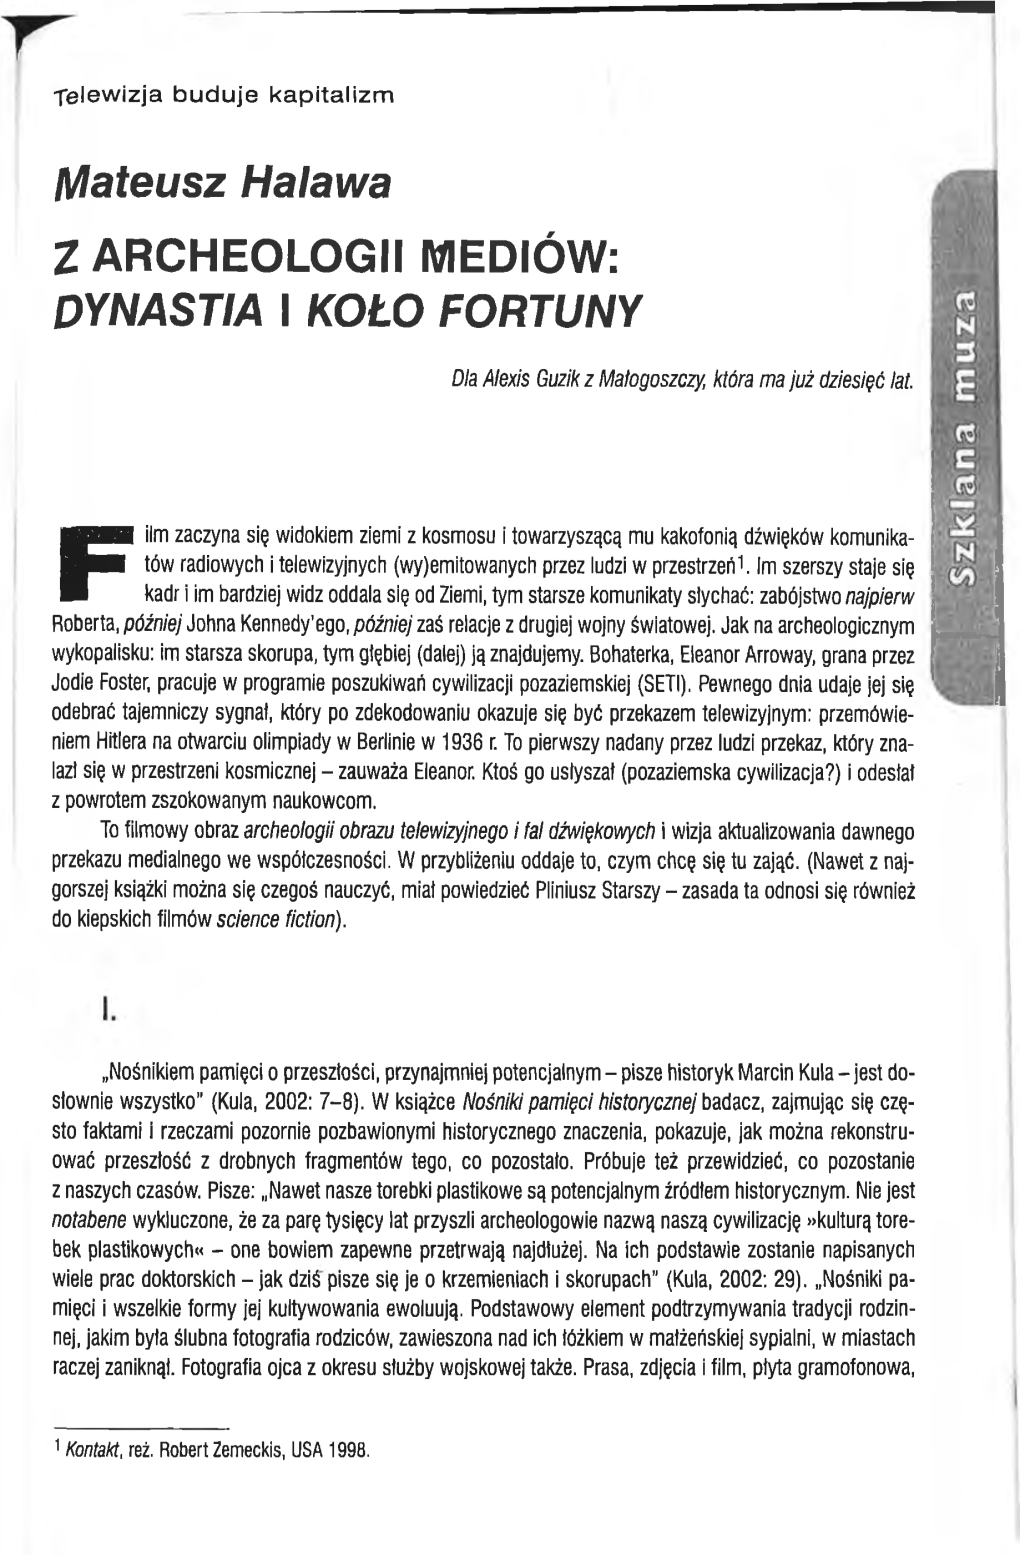 Z Archeologii Mediów : "Dynastia" I "Koło Fortuny"